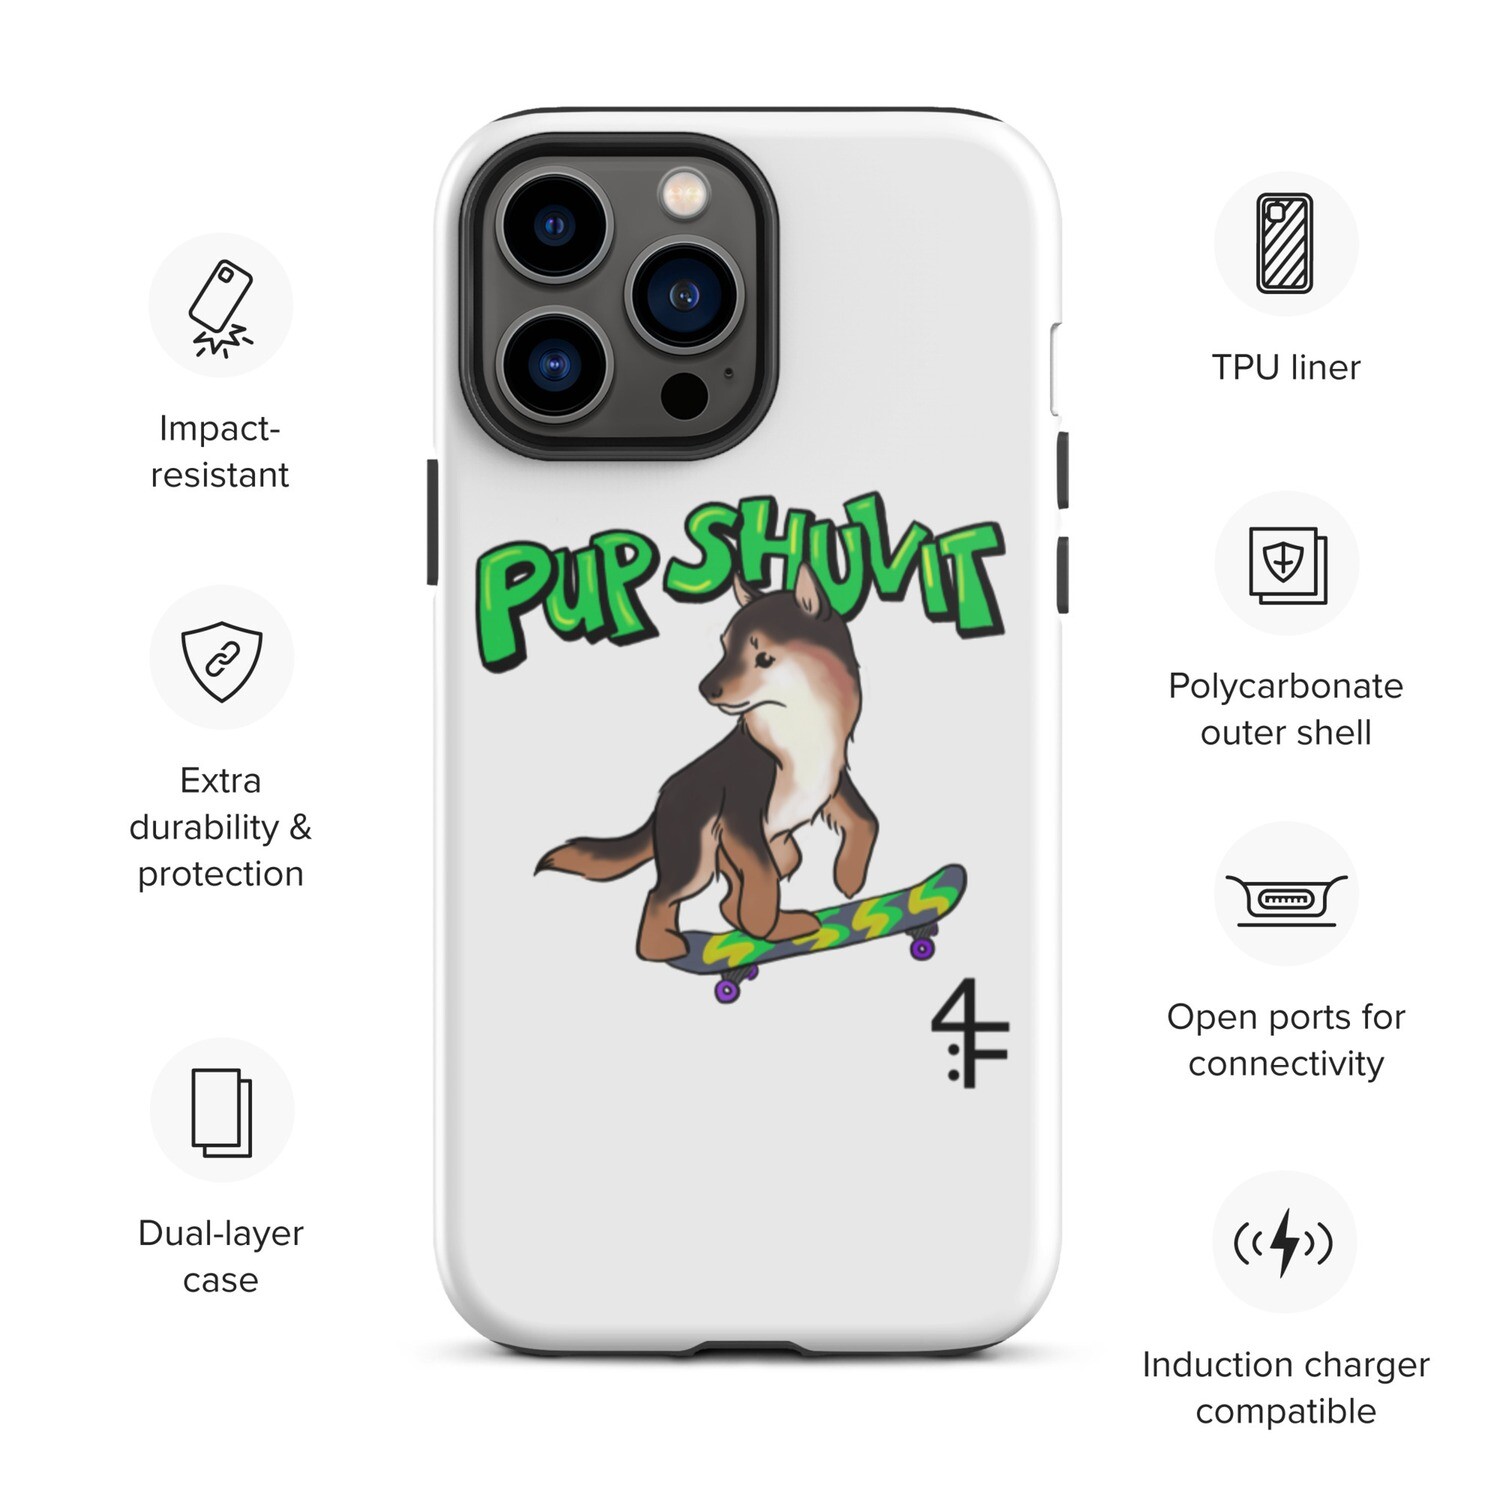 PUP SHUVIT - Tough iPhone case